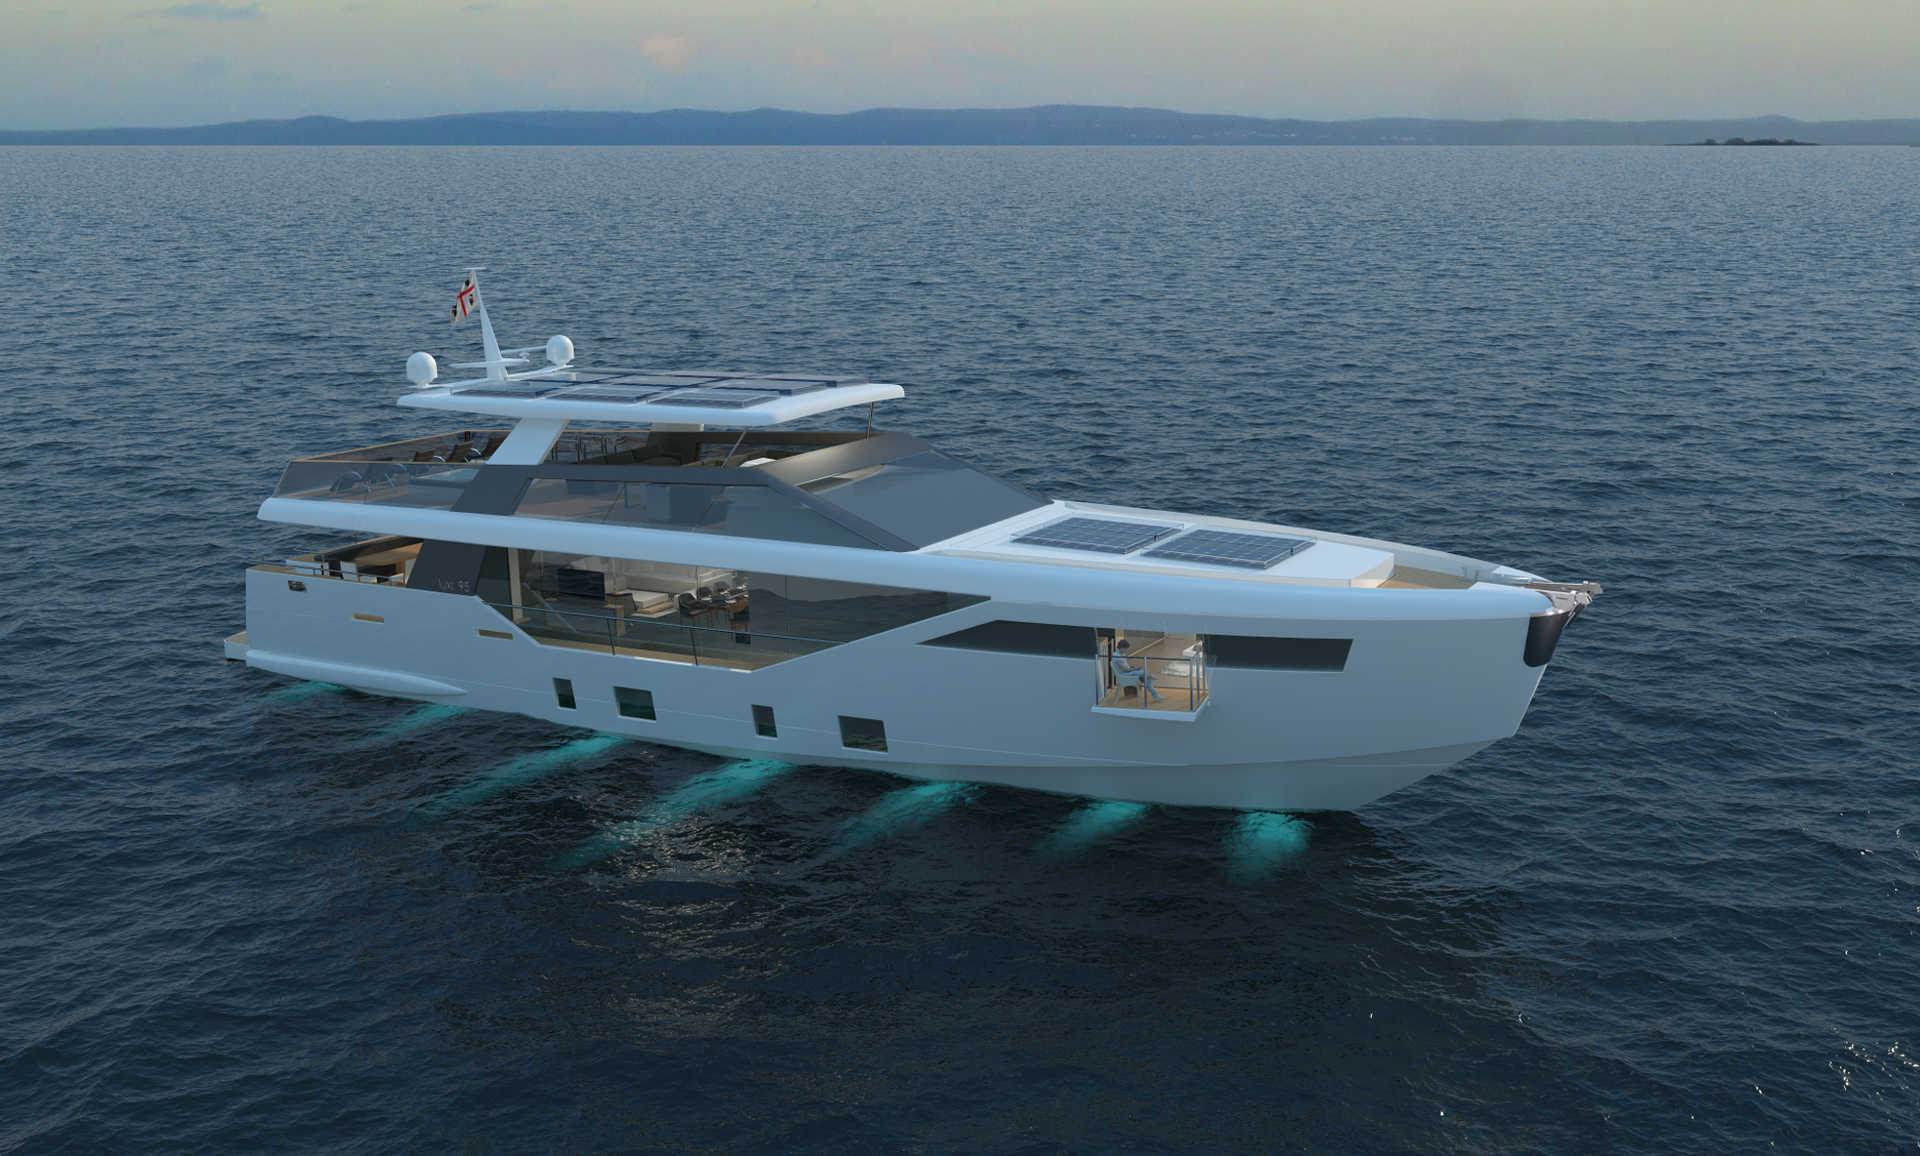 Luxi95,solar motoryacht,superyacht,design